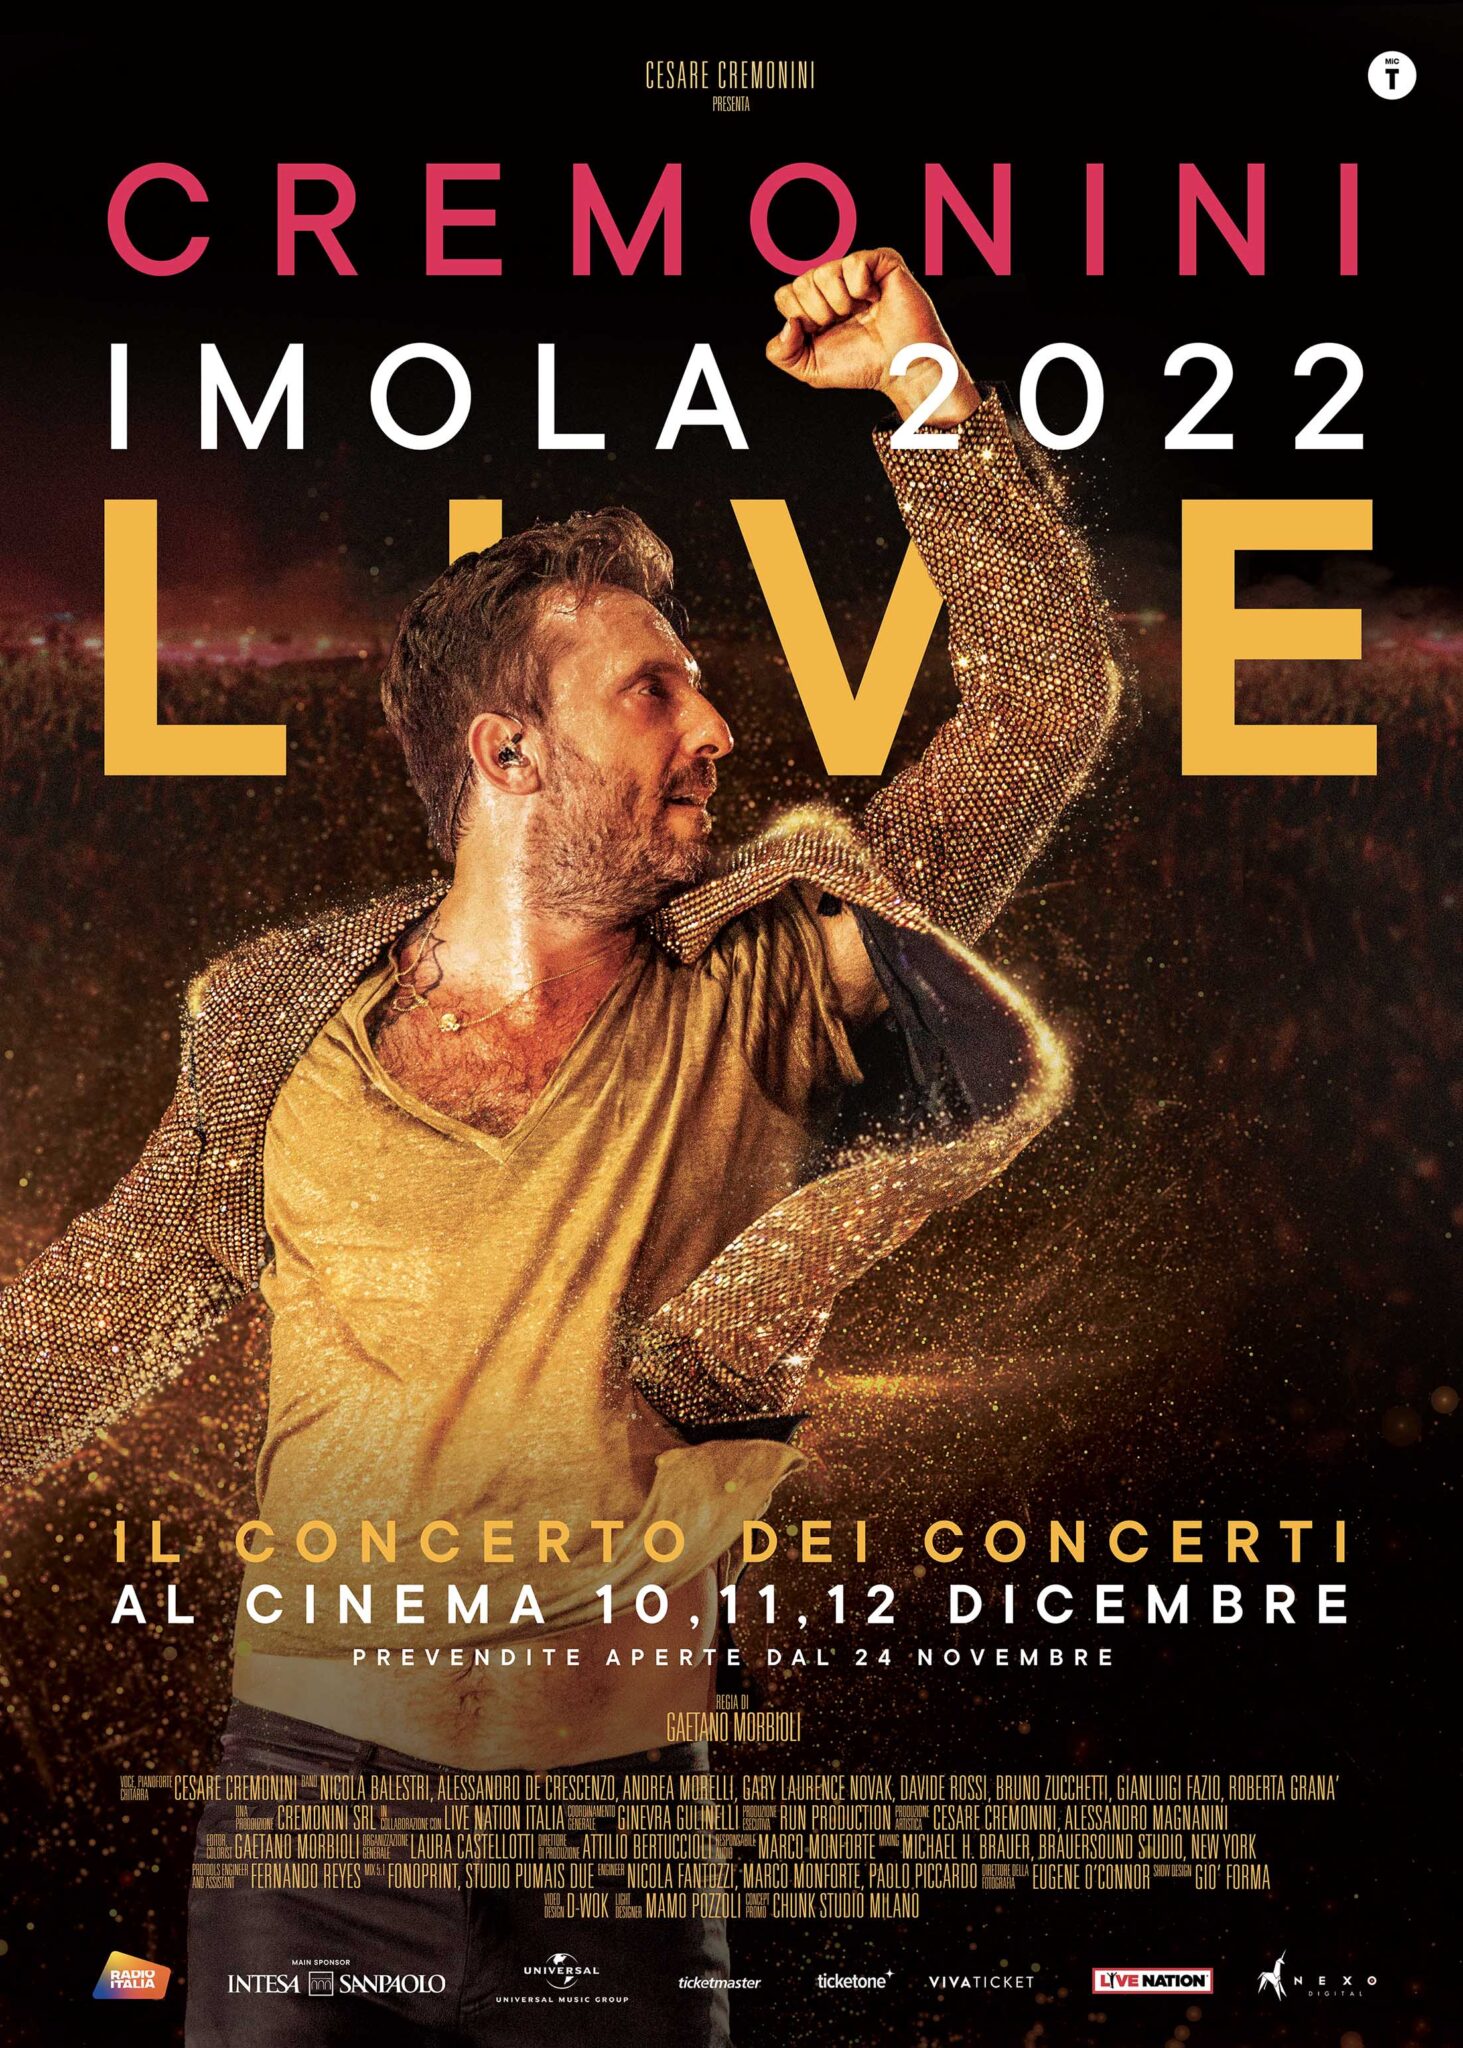 Cremonini Imola 2022 LIVE